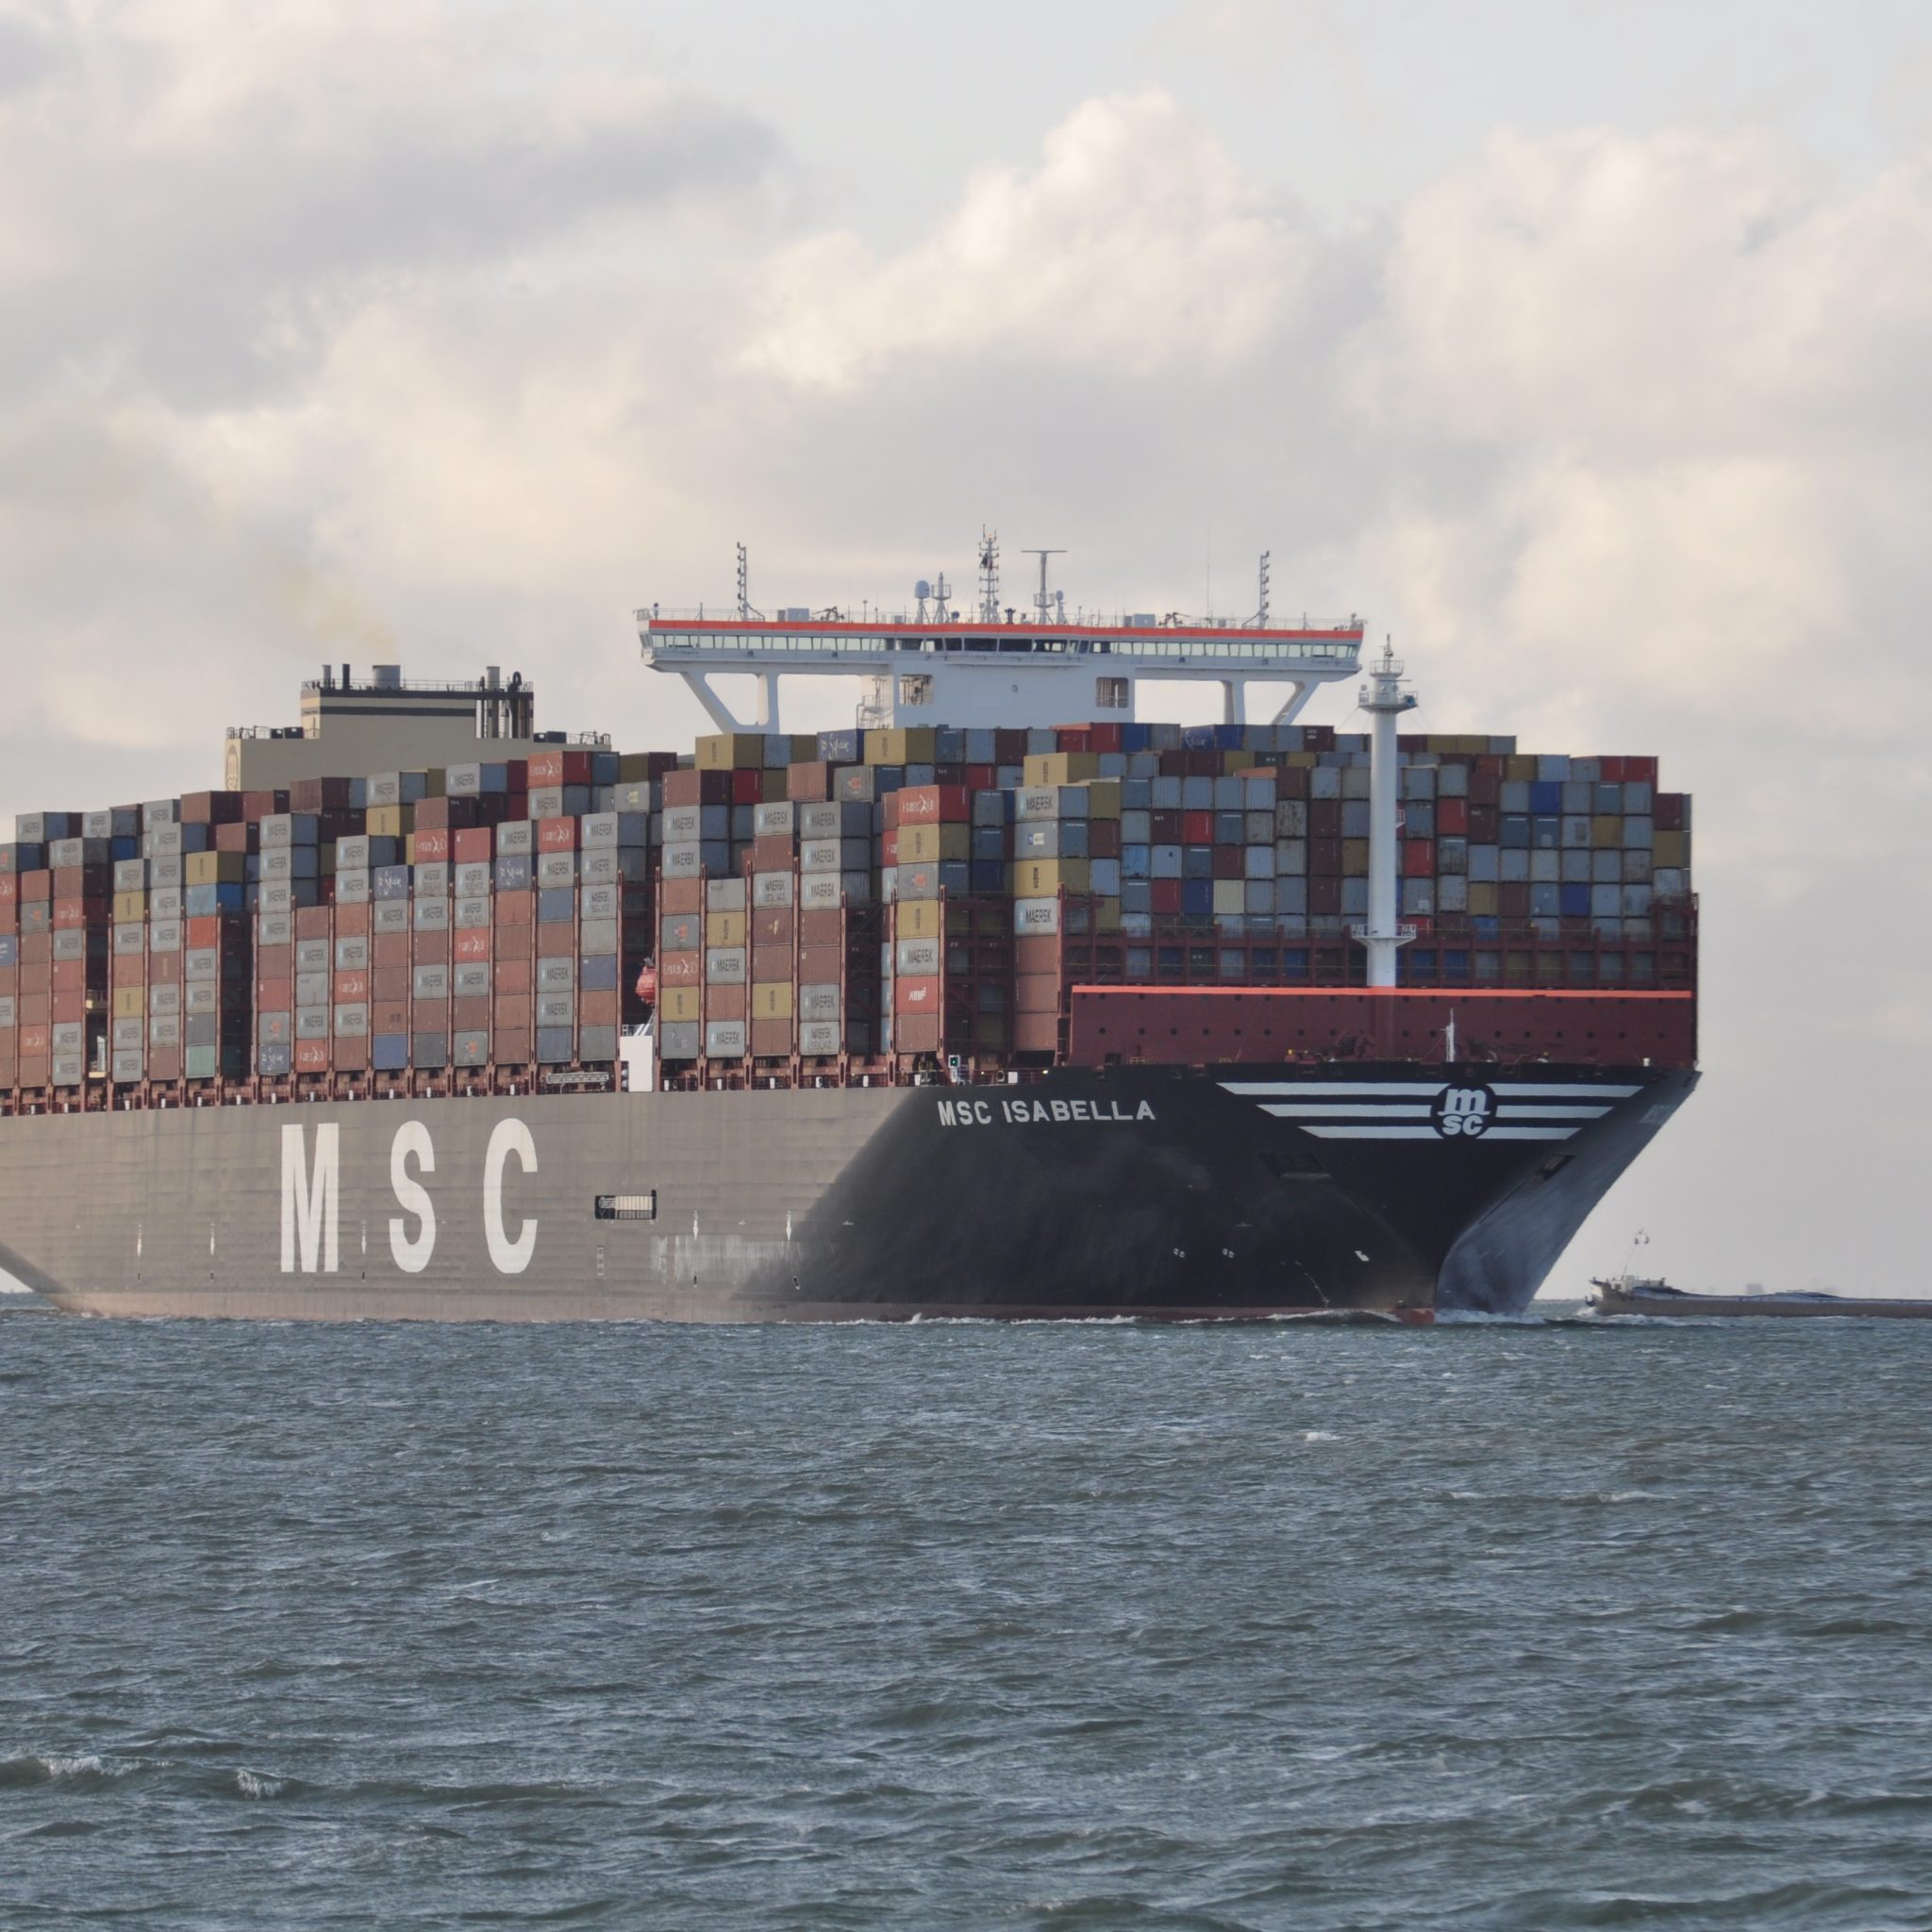 De MSC Isabella, het tot nu toe allergrootste containerschip op de Westerschelde, met een beunschip op tegengestelde koers. (Foto Adri van de Wege)